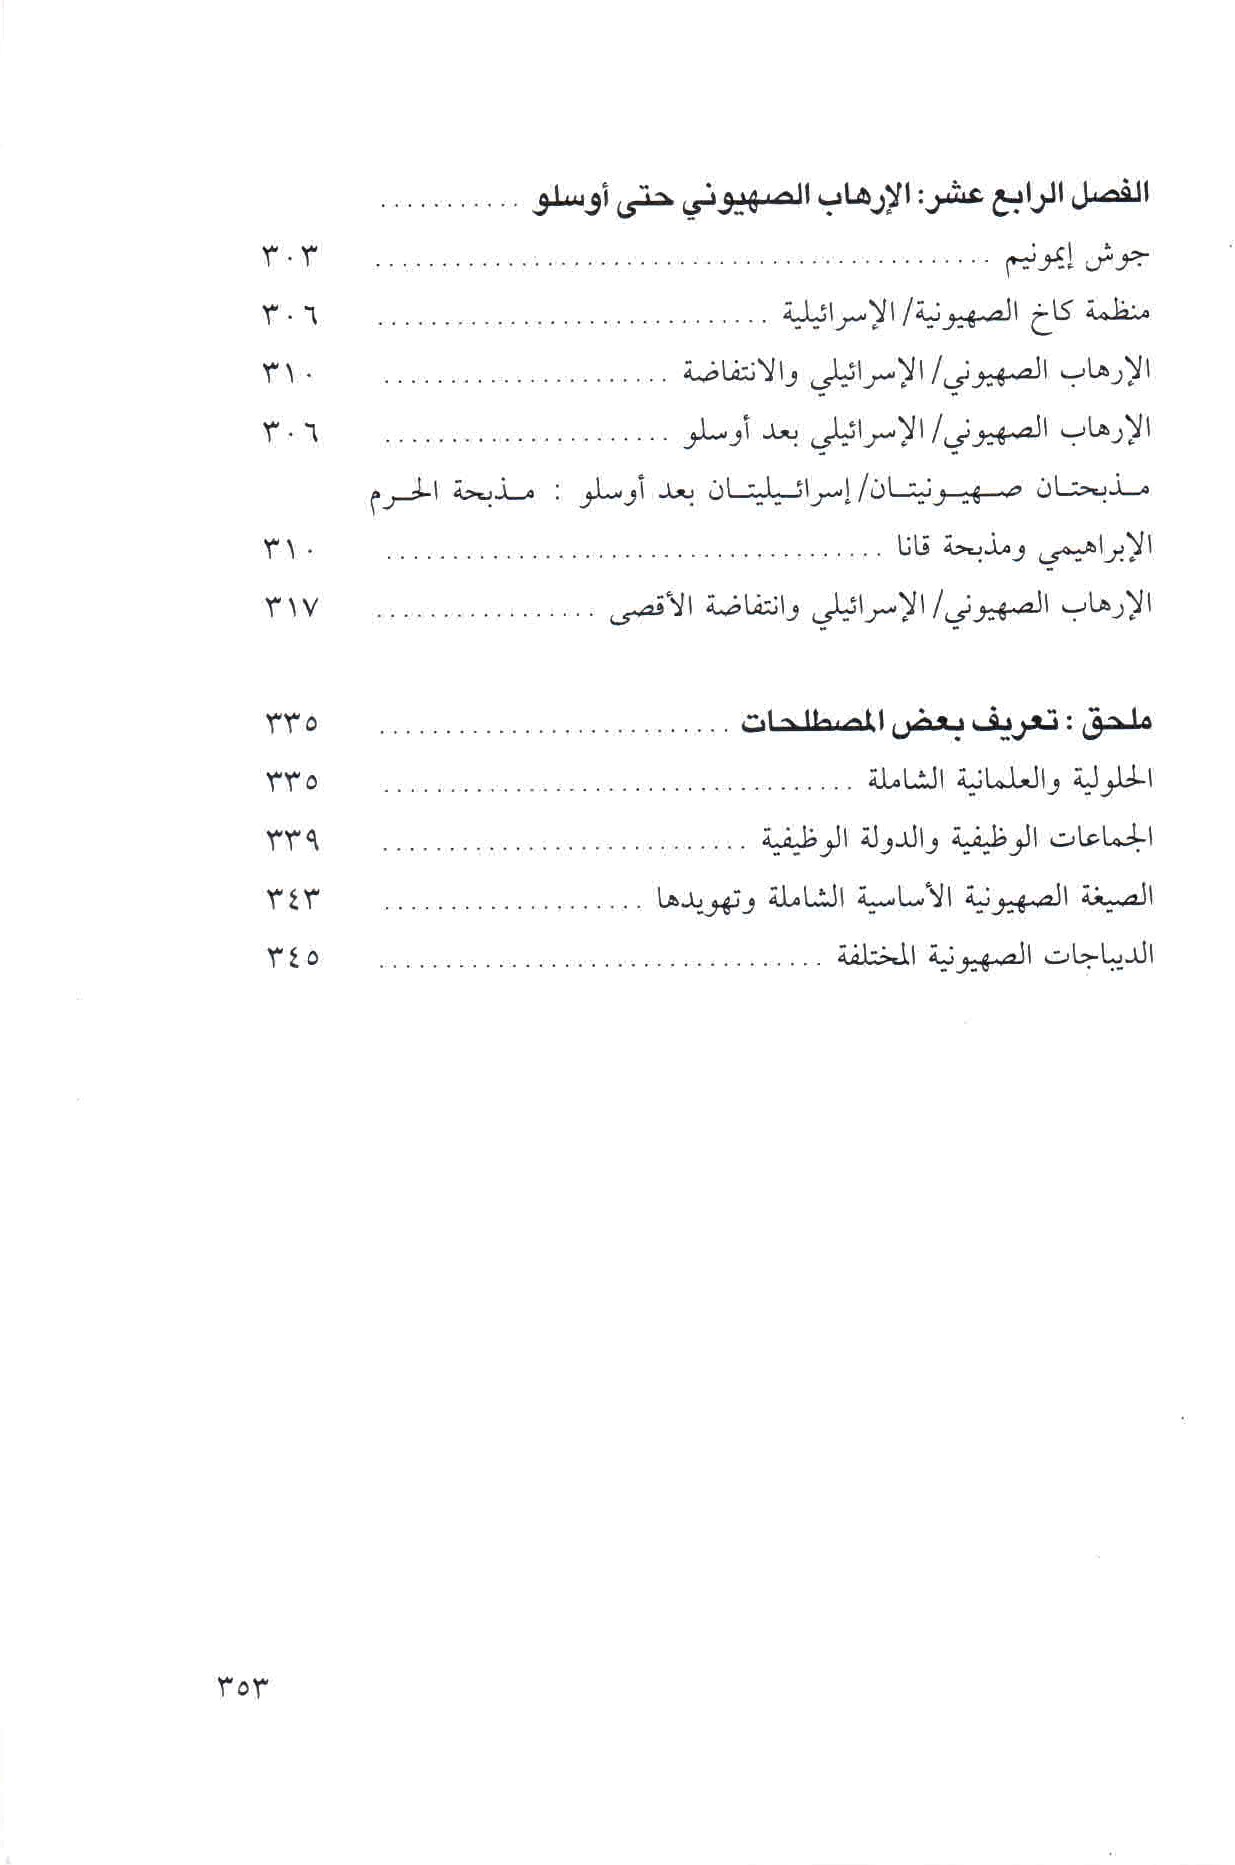  قائمة محتويات كتاب الصهيونية والعنف ص. 353.